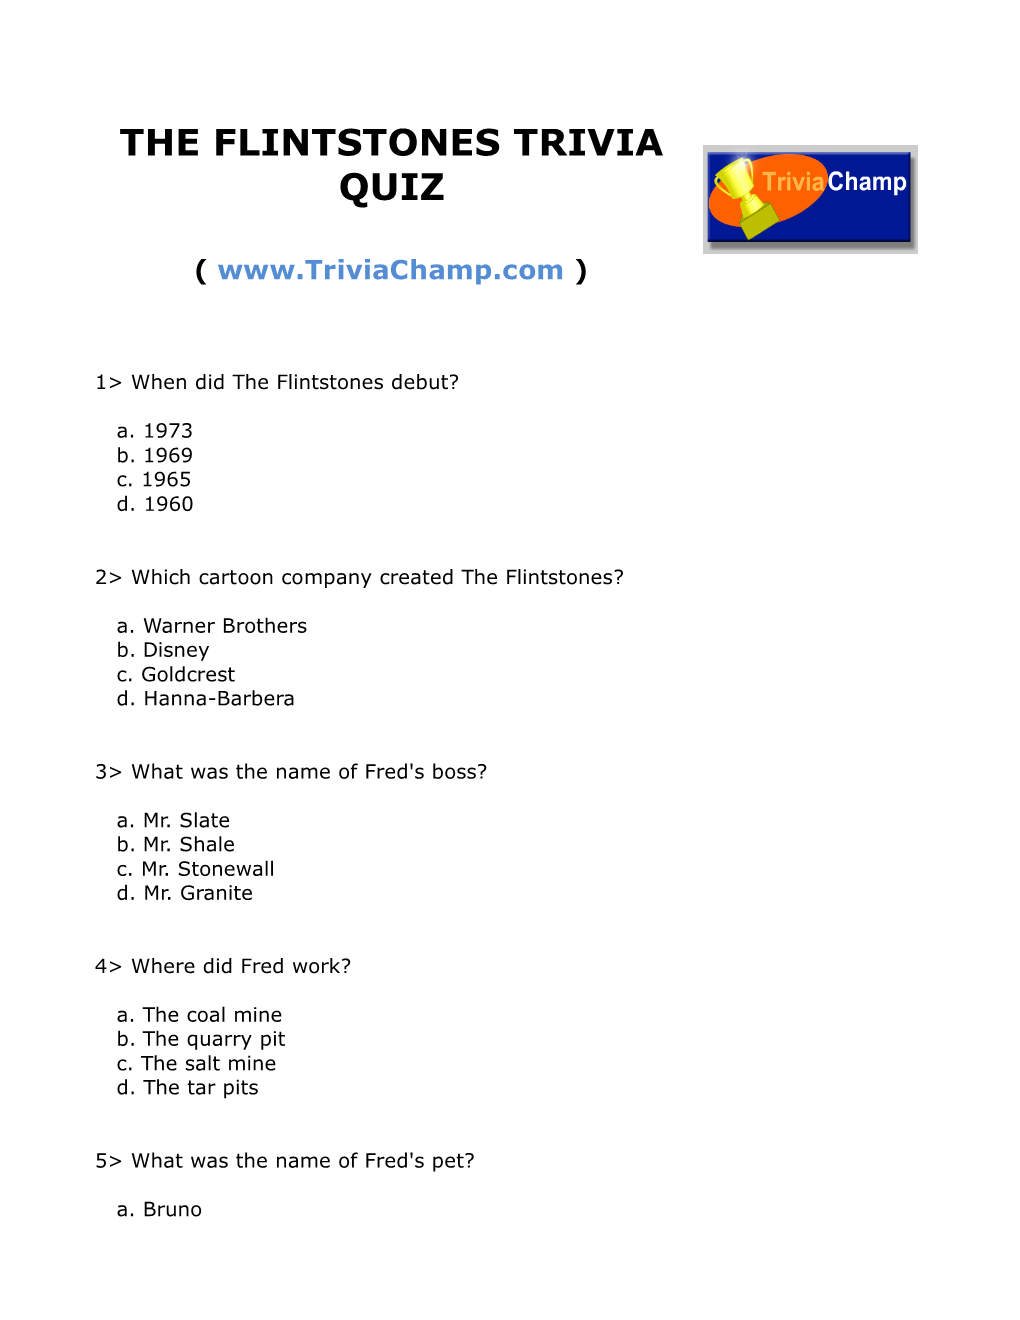 The Flintstones Trivia Quiz